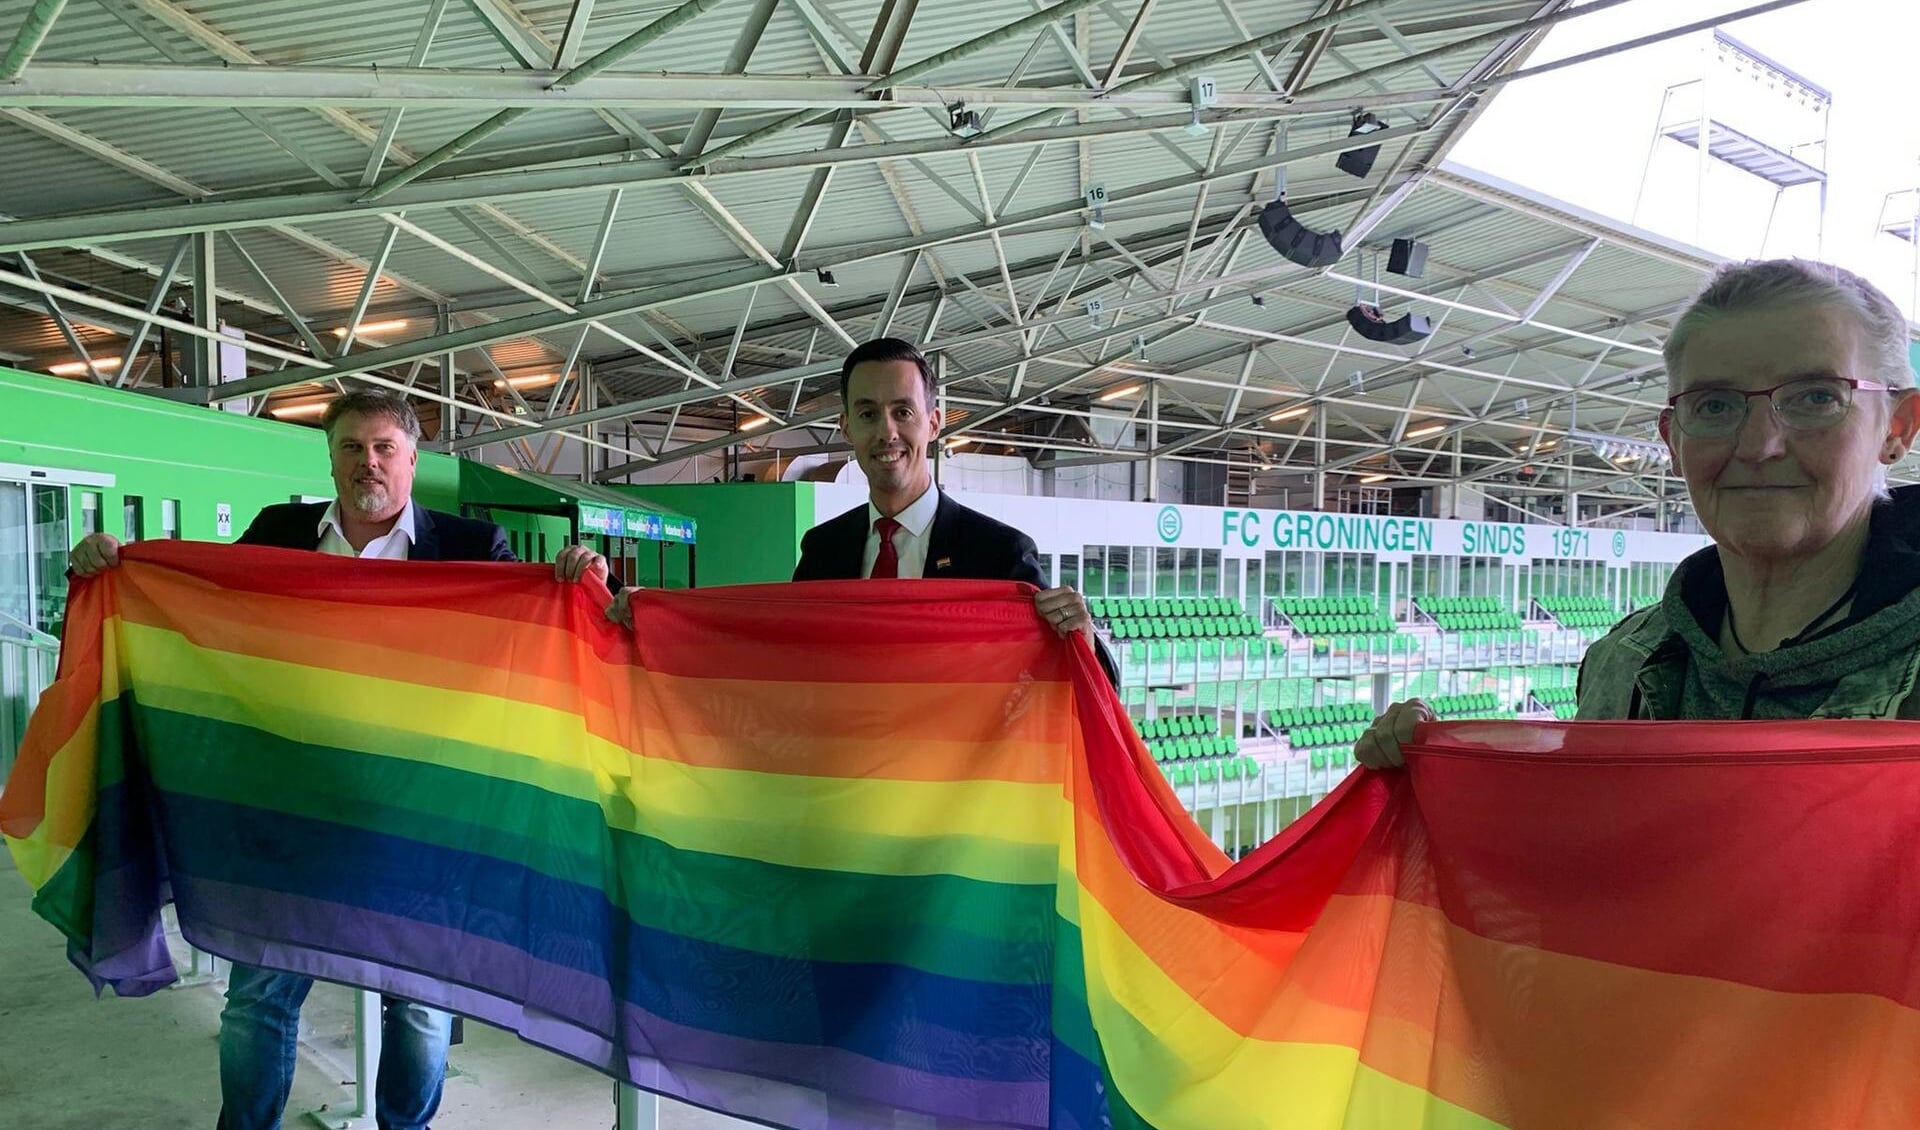 De Regenboogvlag wordt getoond in het Euroborg-stadion.